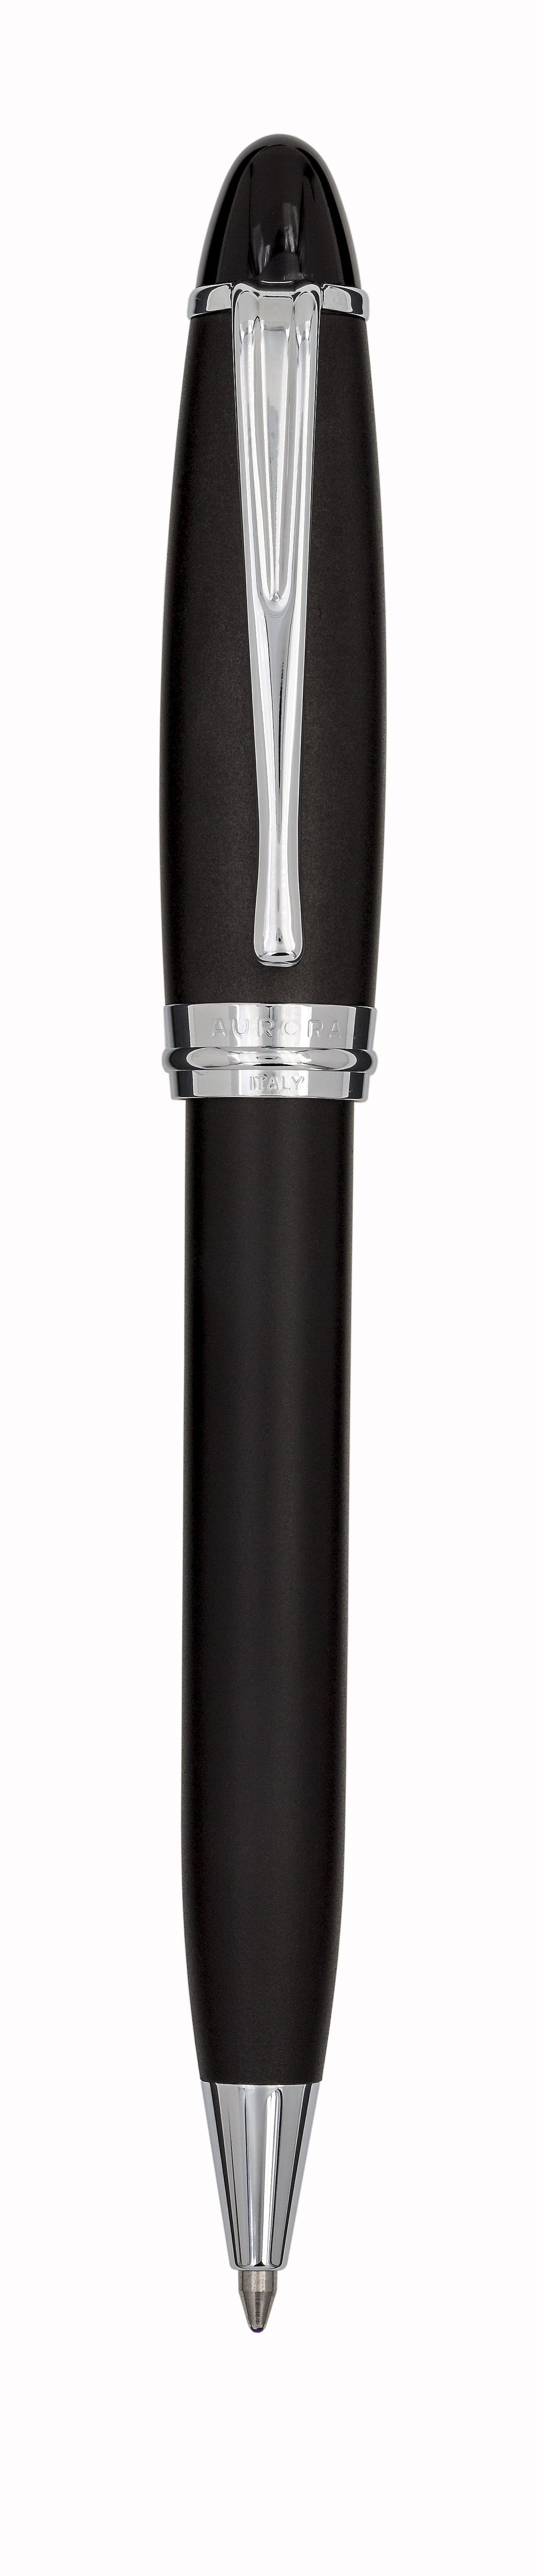 Aurora Ipsilon Satin Black with Chrome Trims Ballpoint Pen